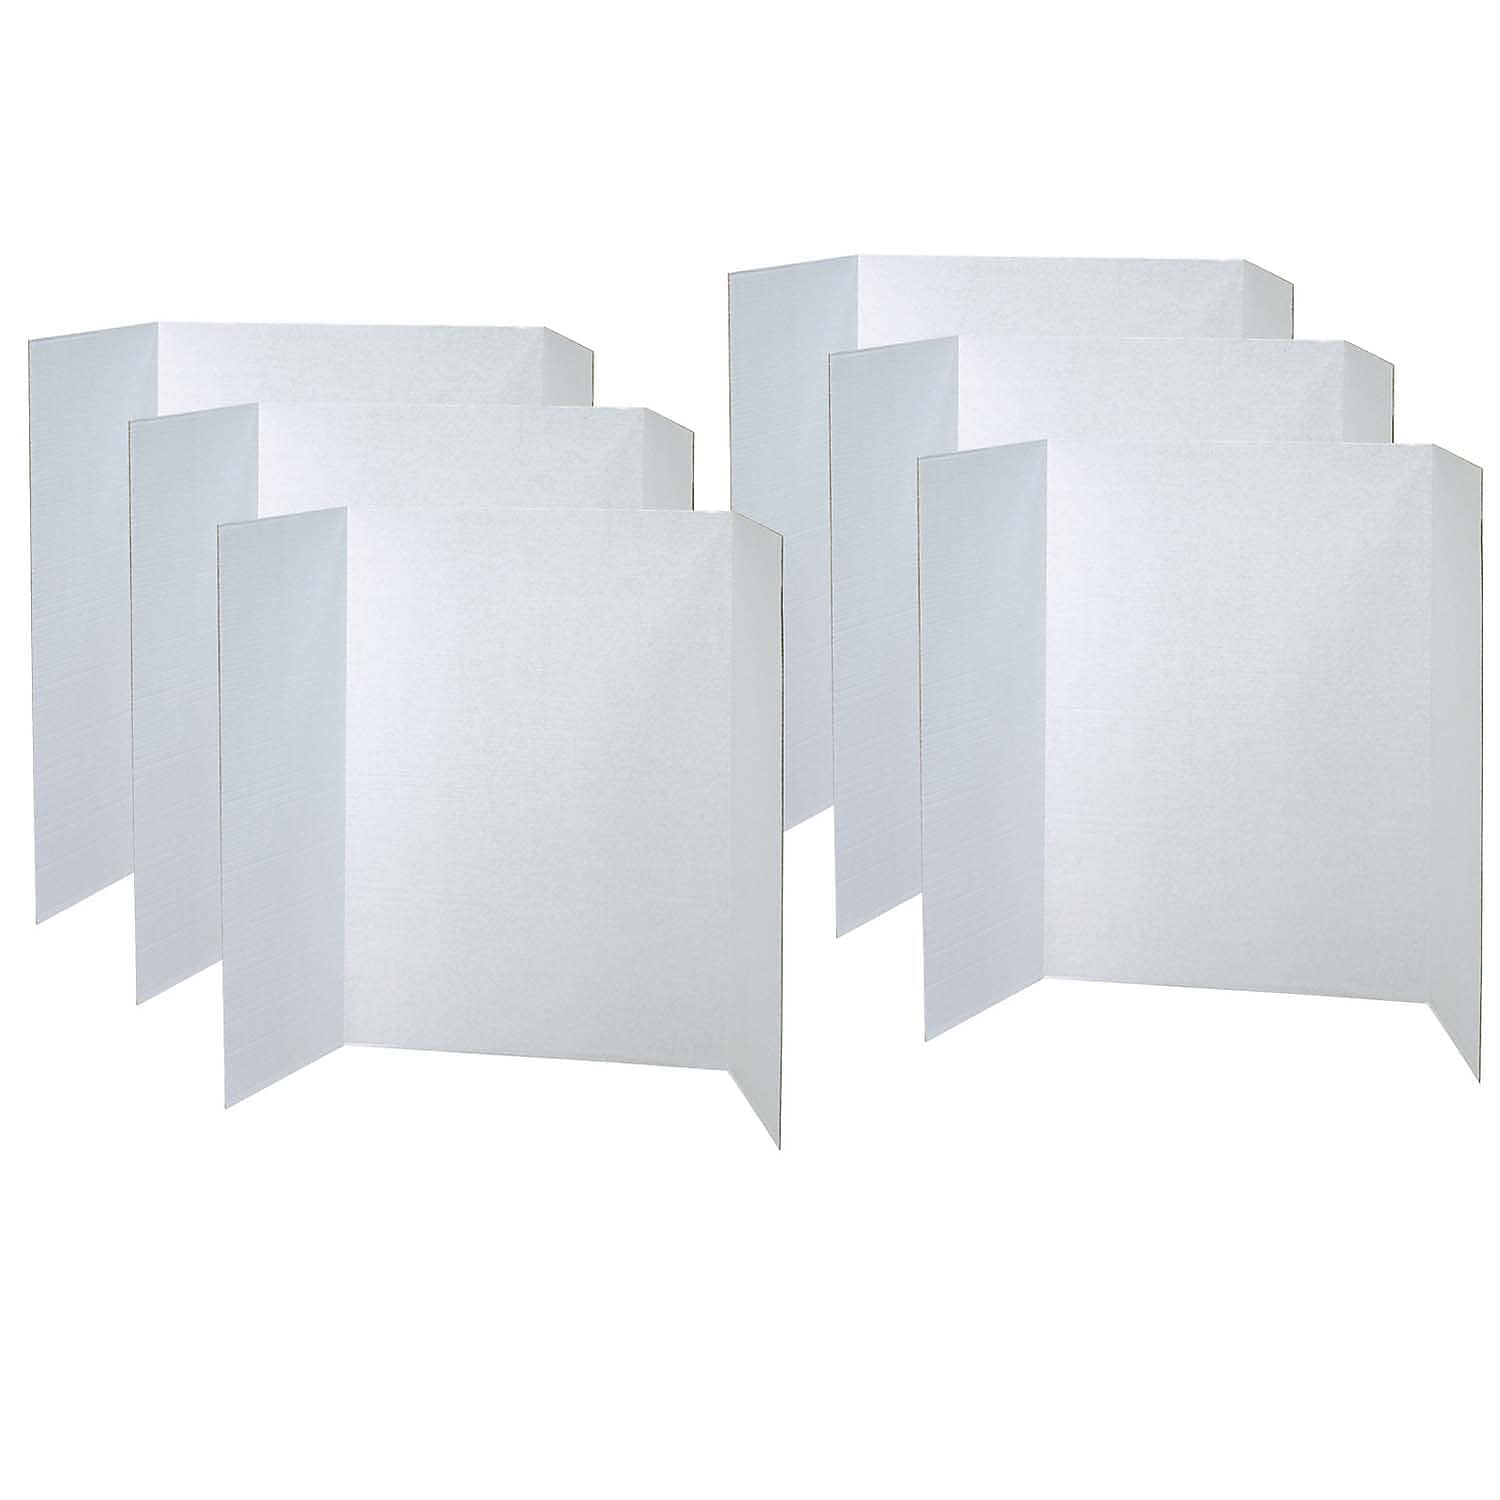 Foam Presentation Board, White, 1/2 Faint Grid 28 x 22, 1 Board -  PACCAR12080, Dixon Ticonderoga Co - Pacon